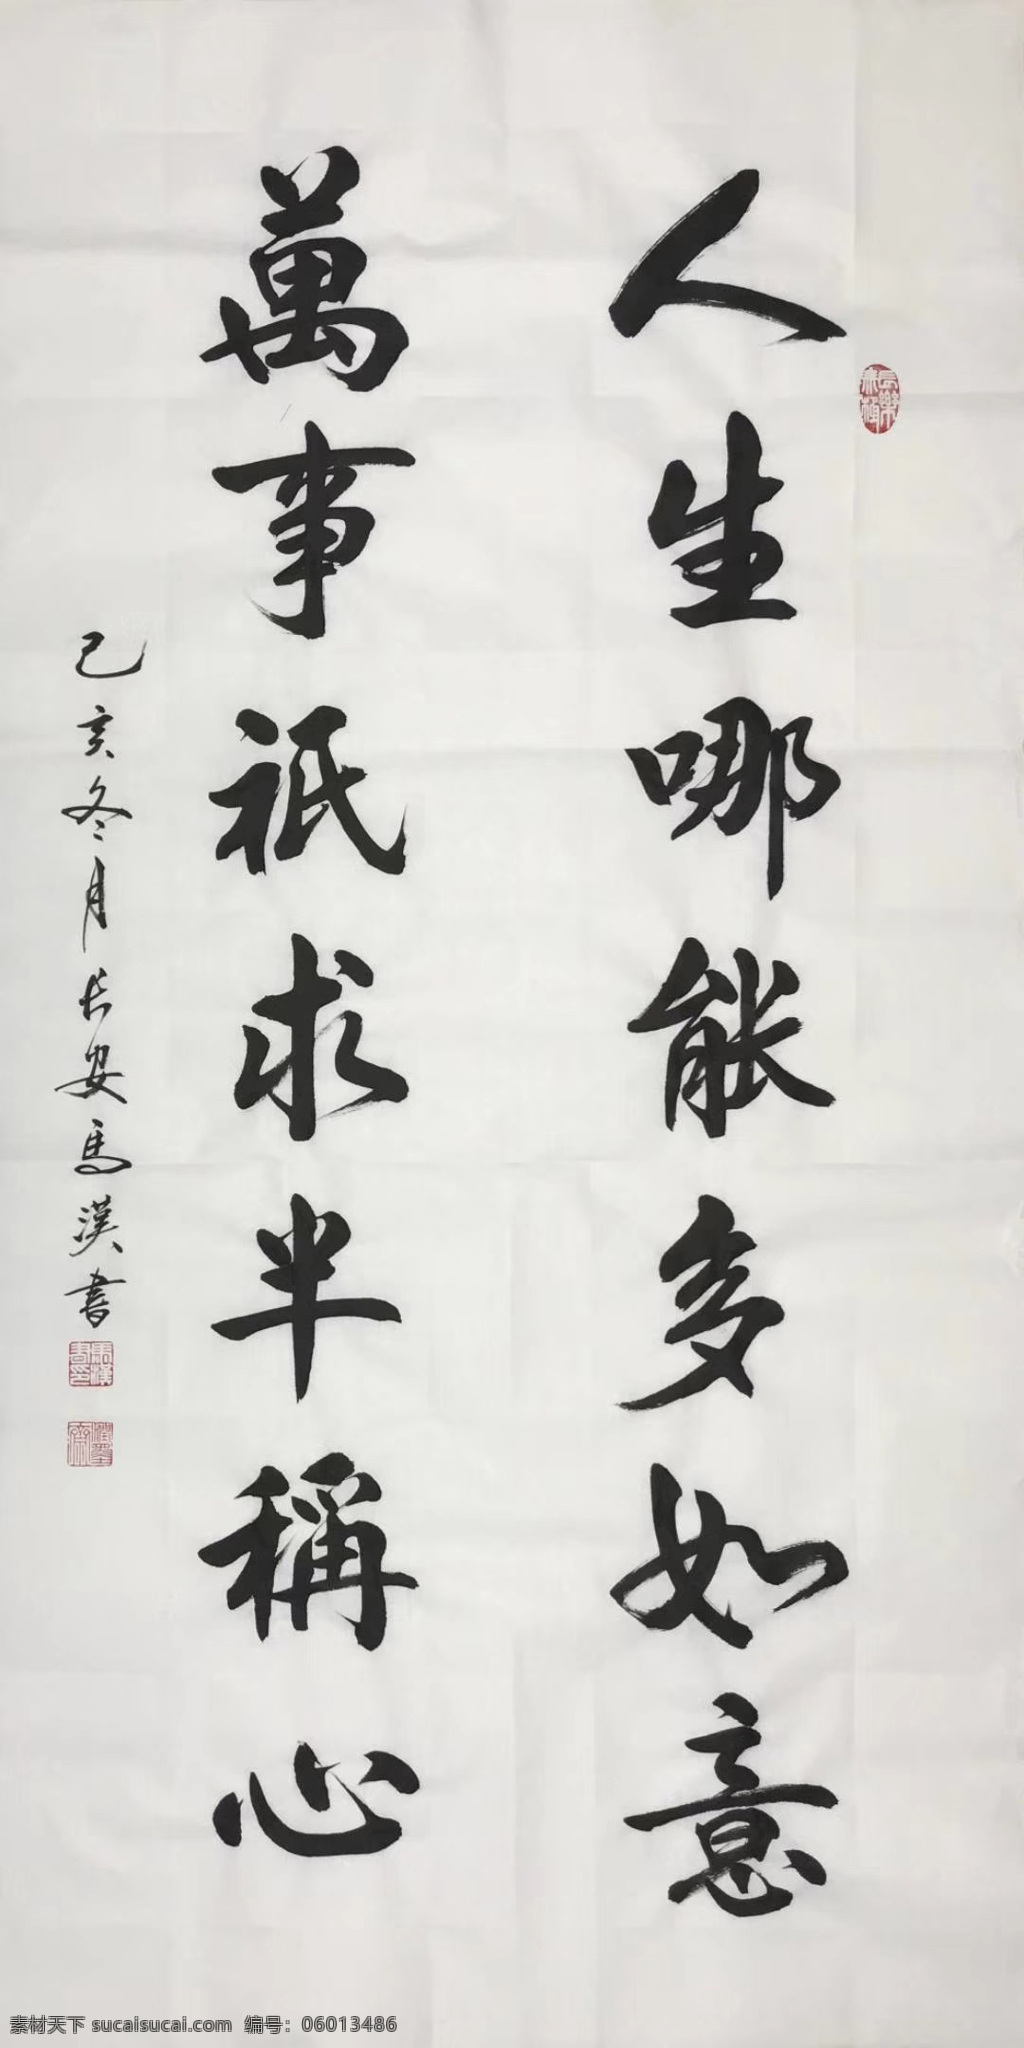 诗歌 书法 字画 诗人 字帖 画画 毛笔贴 绘画 文化艺术 绘画书法 诚信 墙纸 美术 字体 古代文化 中国字